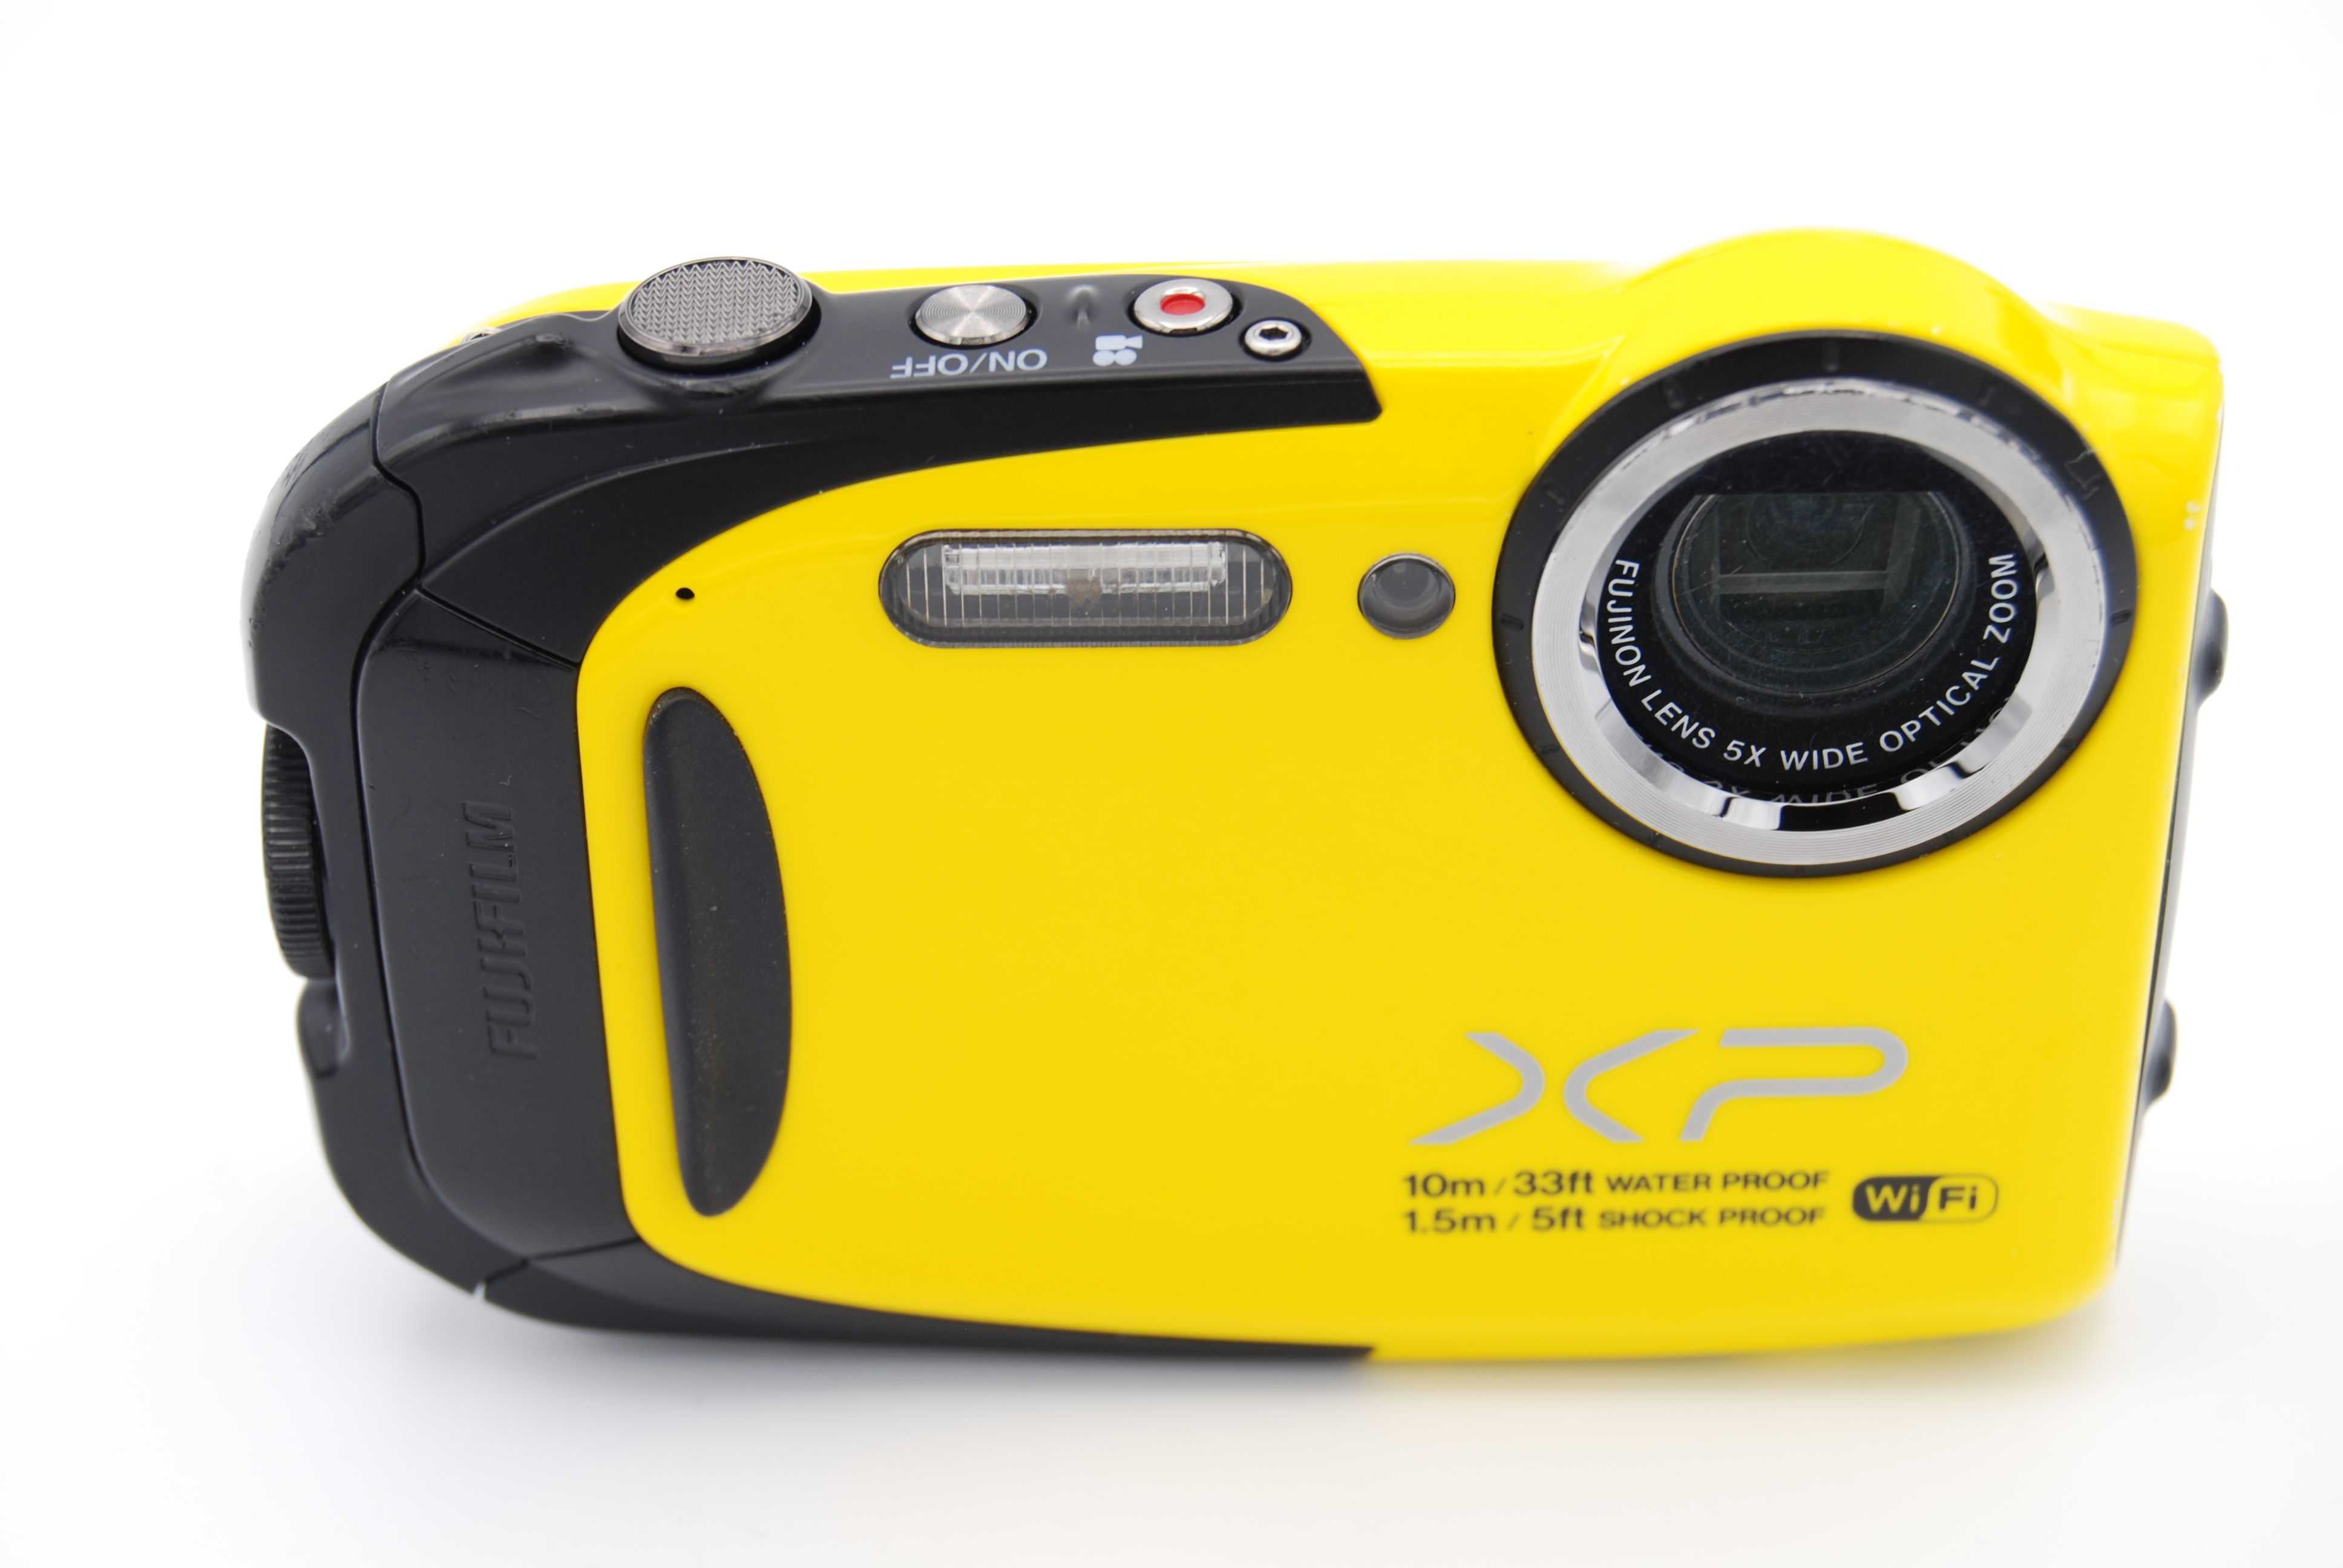 Фотоаппарат фуджи finepix s1600 купить недорого в москве, цена 2021, отзывы г. москва